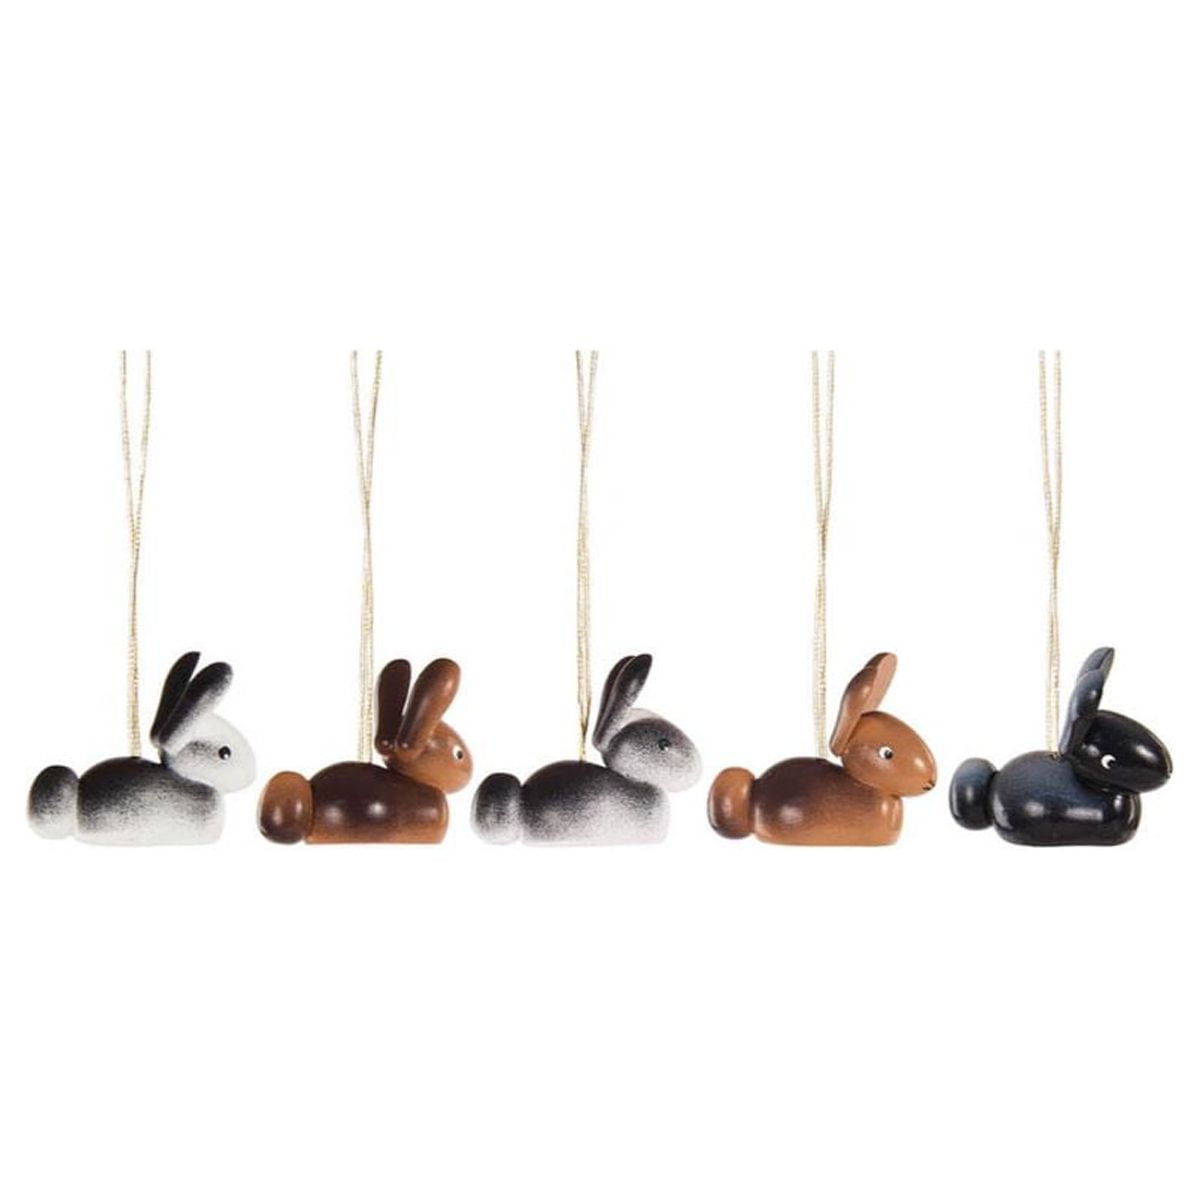 198-106 Dregeno Ornaments - Assorted Bunnies - Set Of 6